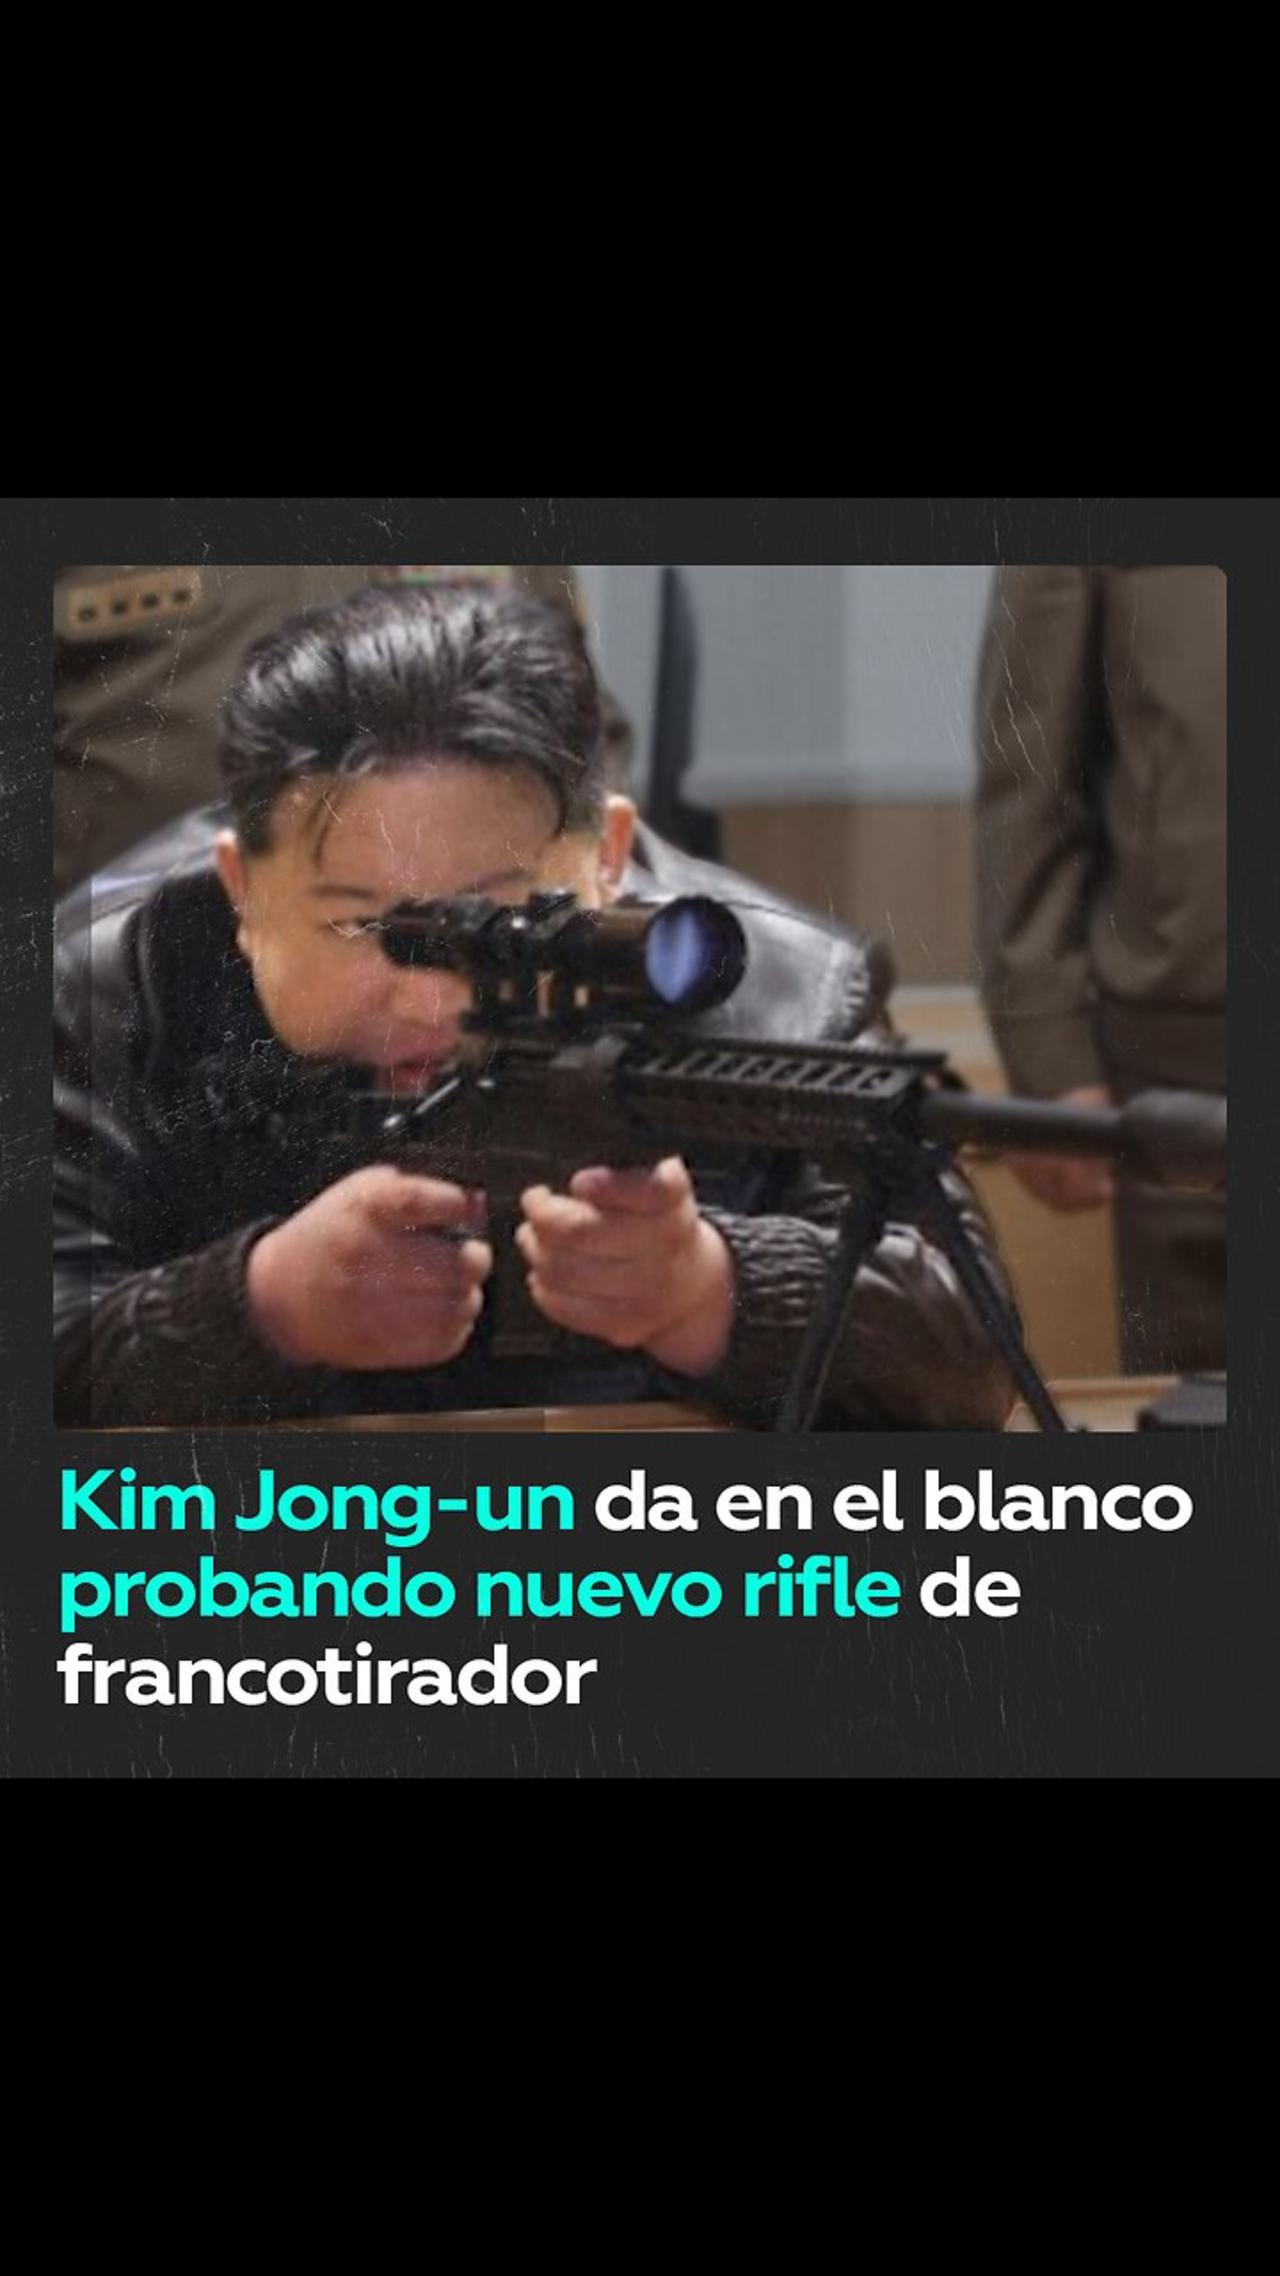 Kim Jong-un prueba un nuevo rifle de francotirador y da en el blanco